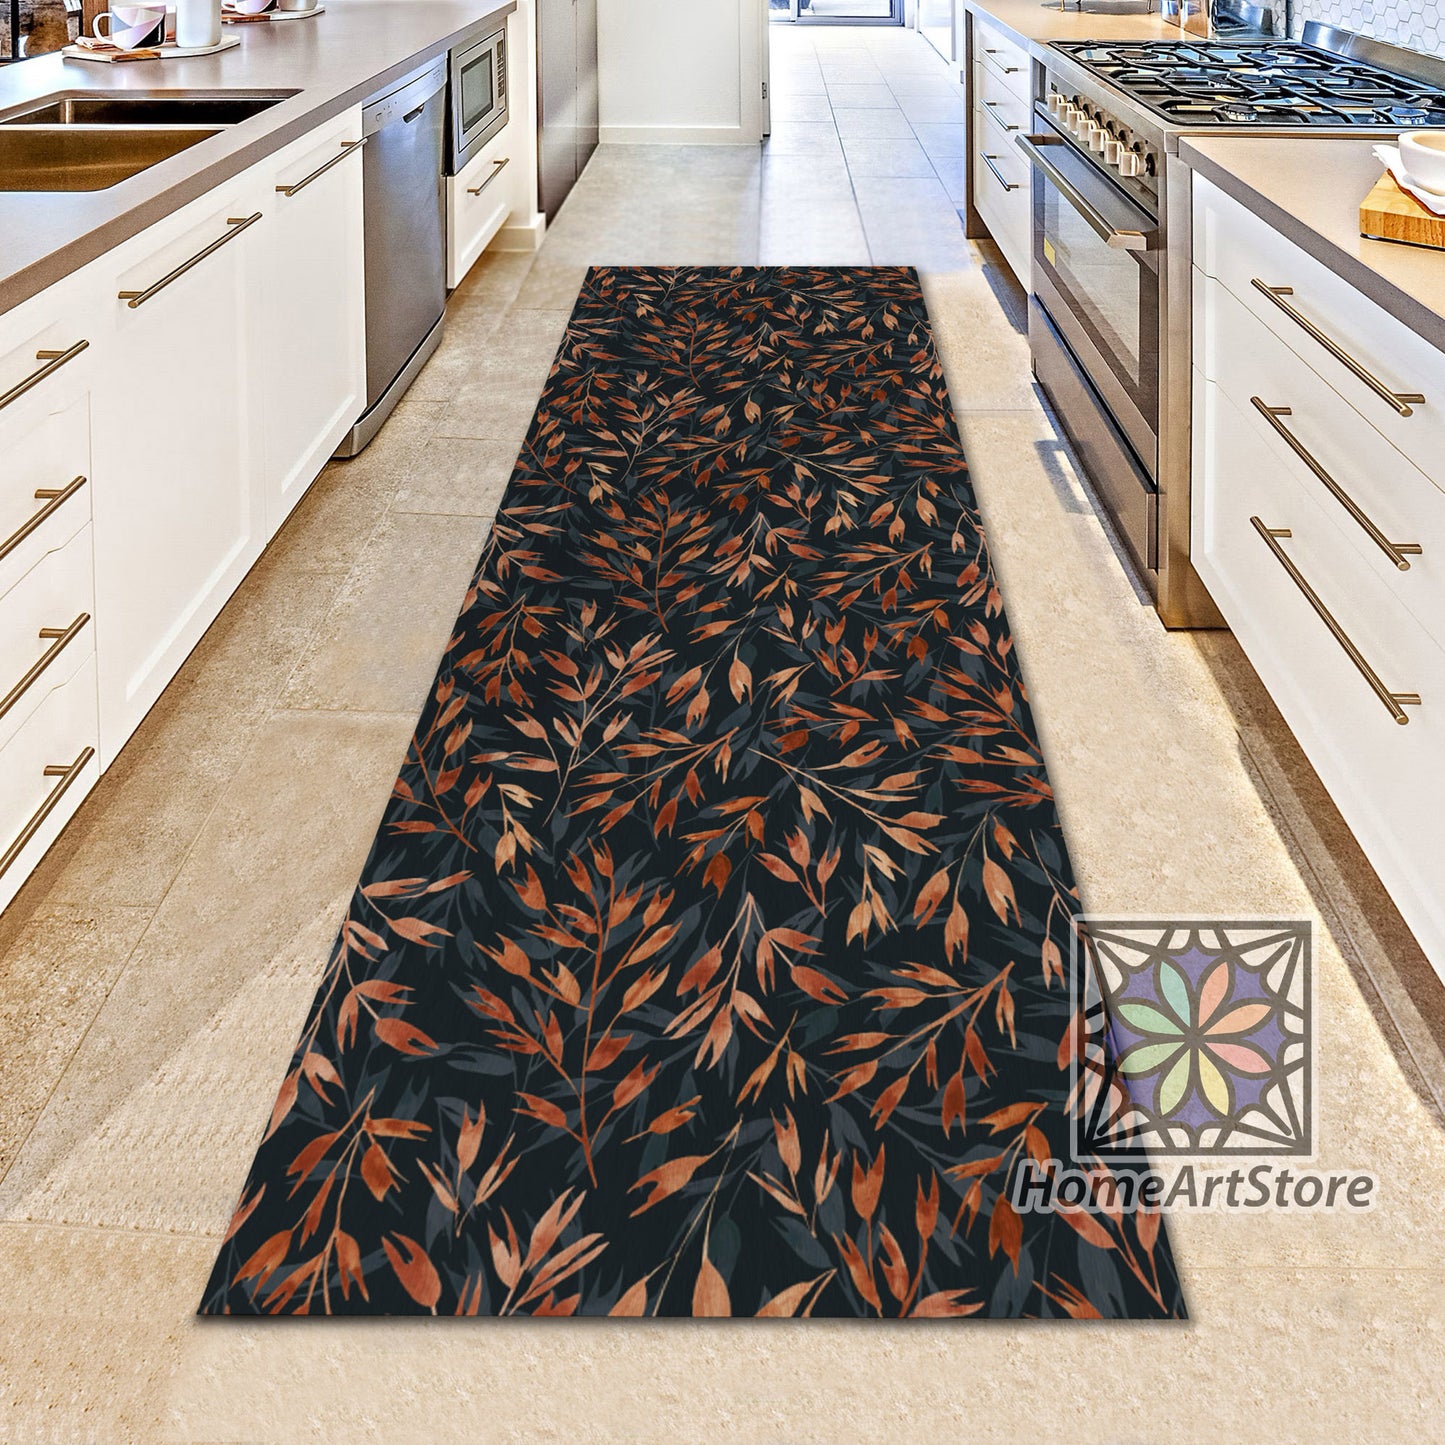 Leaves Pattern Runner Rug, Hallway Runner Carpet, Decorative Kitchen Runner Mat, Dried Leaves Themed Rug